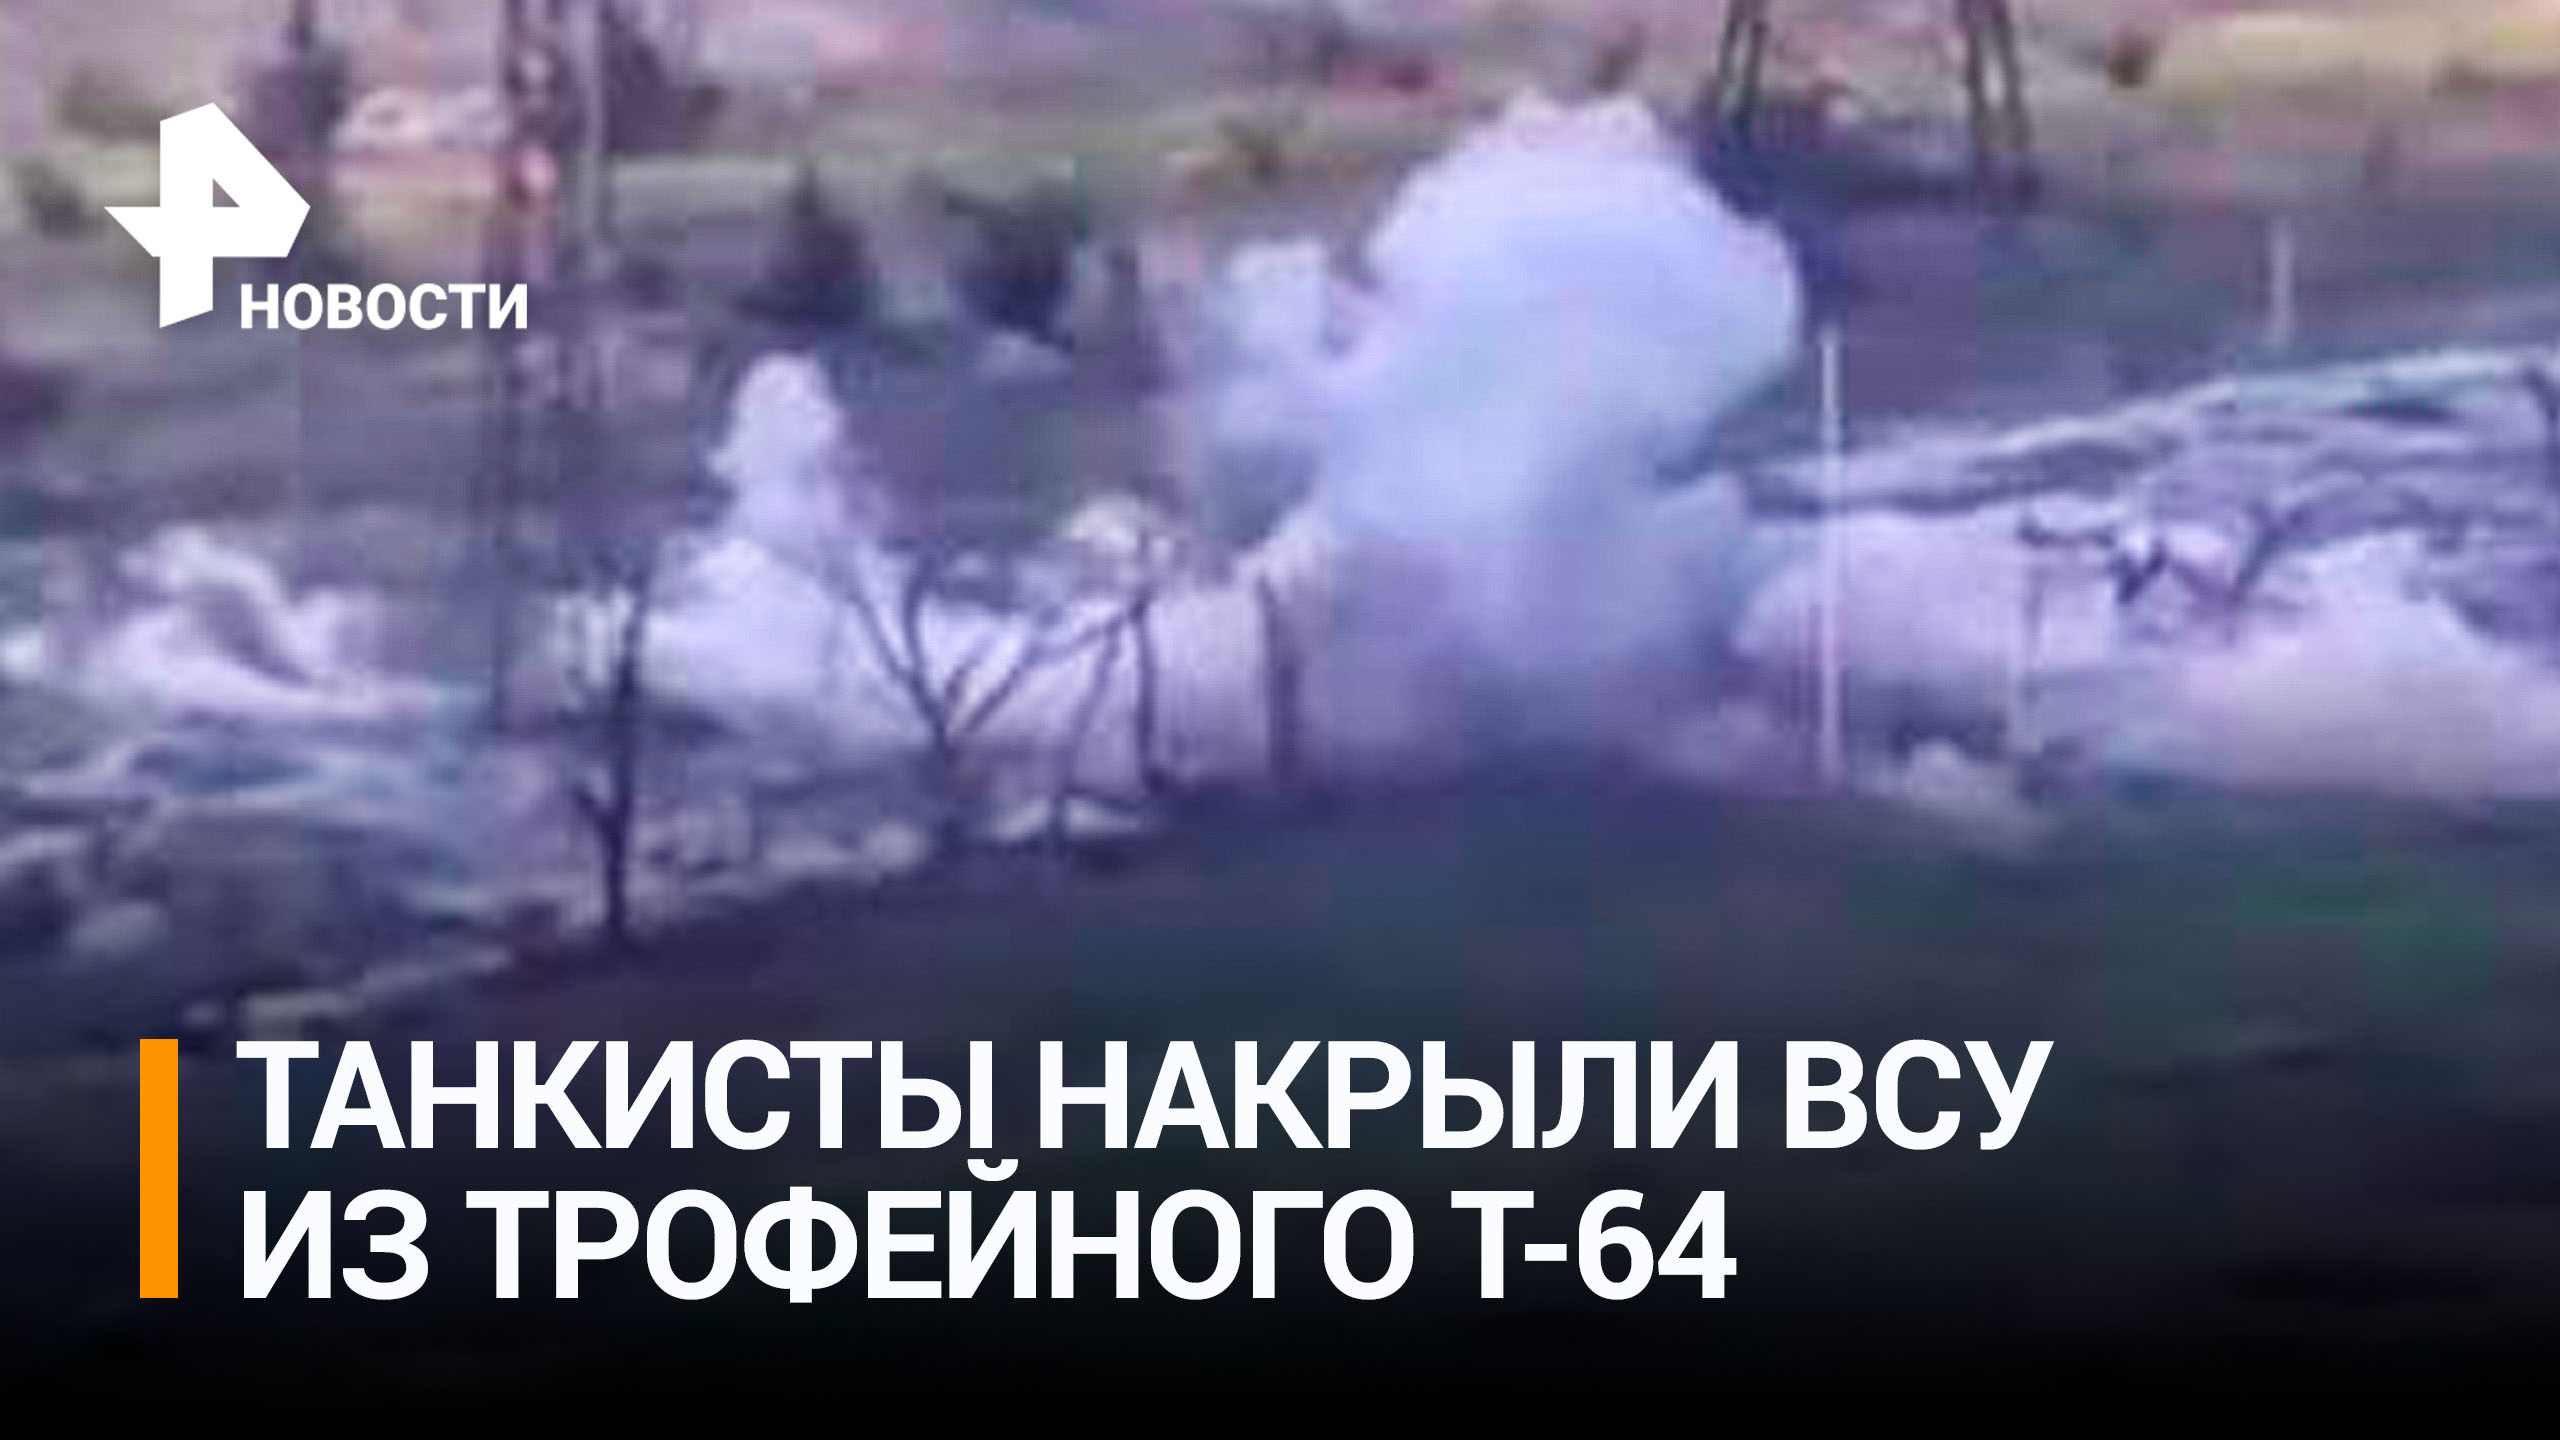 Российские военные на трофейном Т-64 выбивают ВСУ плотным огнем / РЕН Новости